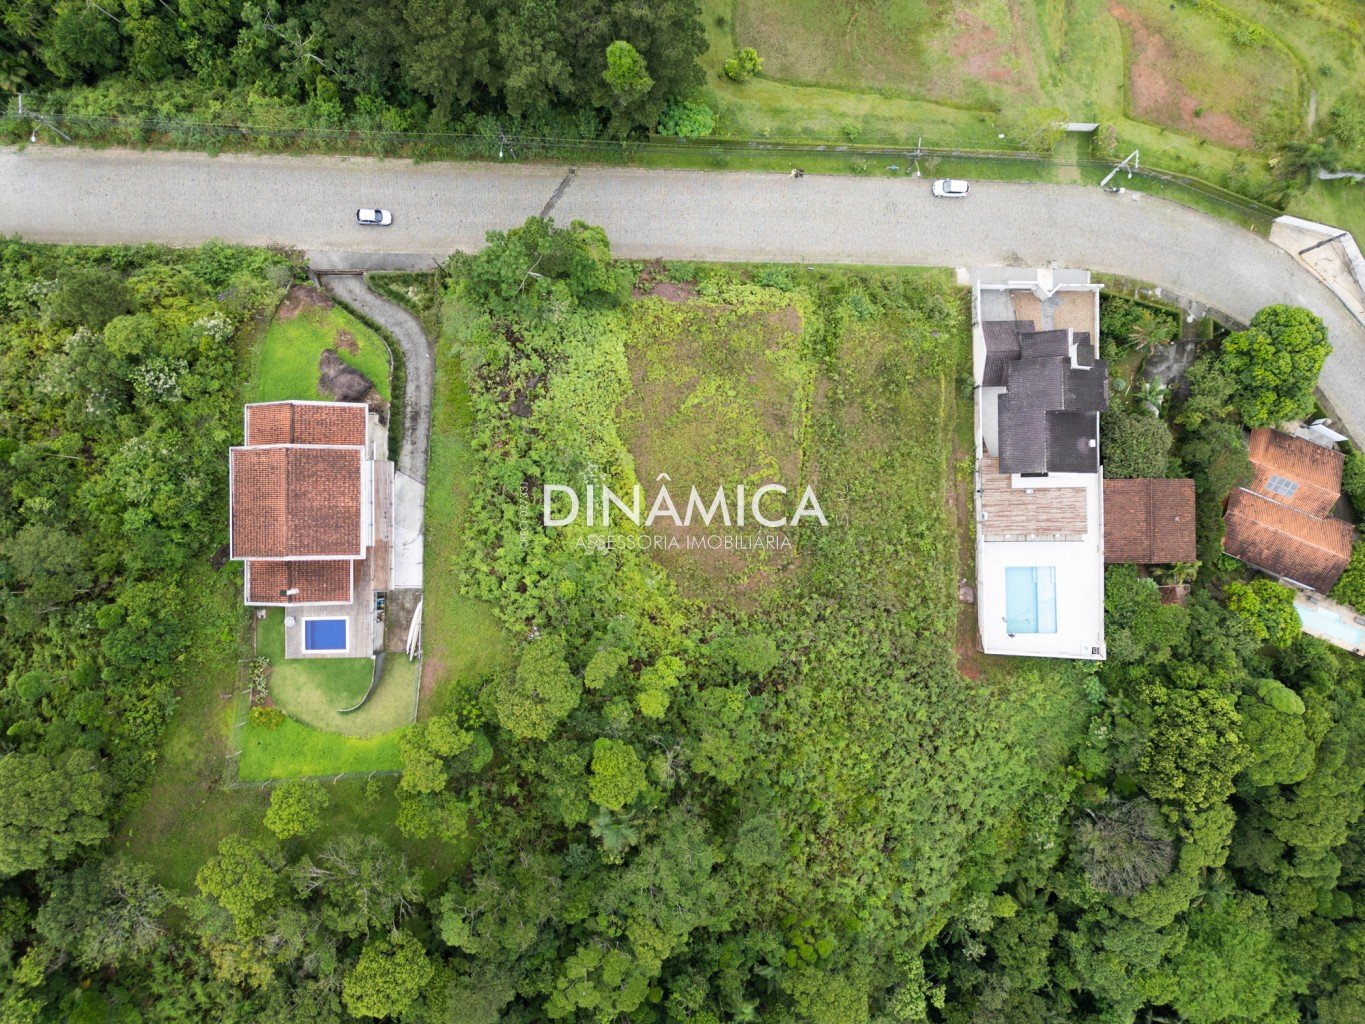 terreno a venda, terreno a venda em Blumenau, terreno a venda no bairro Ponta Aguda, imobiliária em Blumenau, dinamica sul